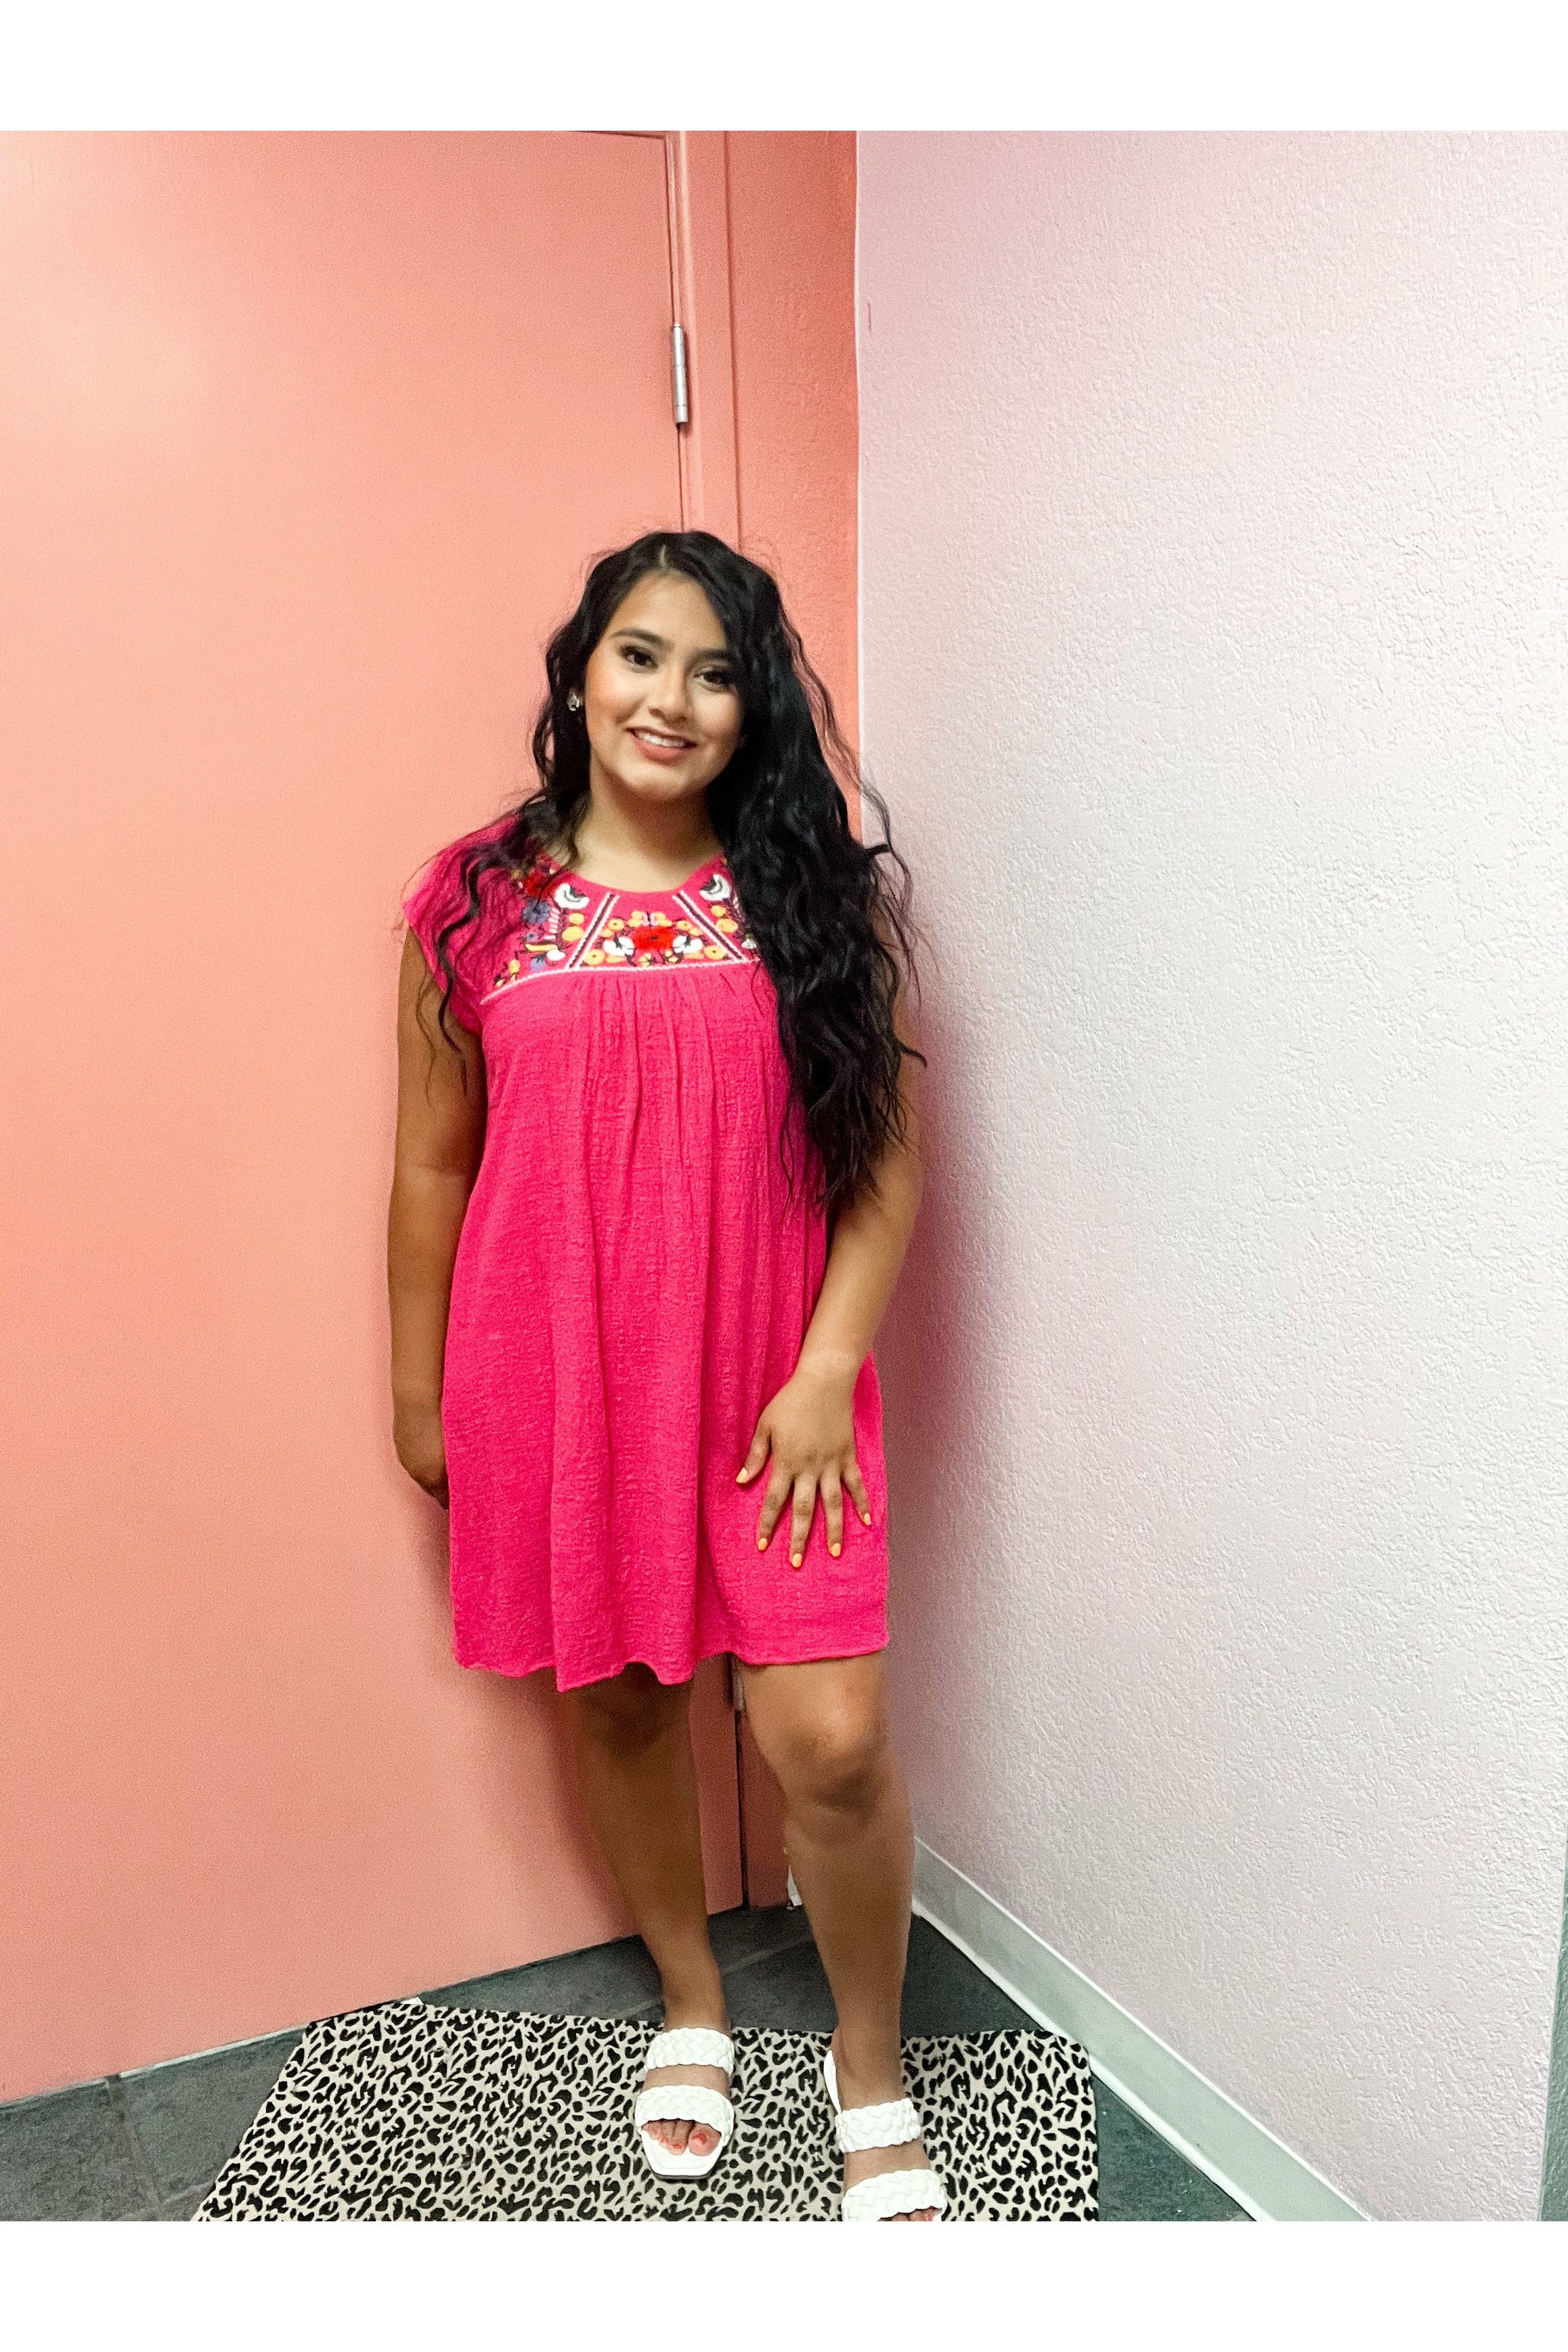 La Puebla Dress – Blessed and Unique